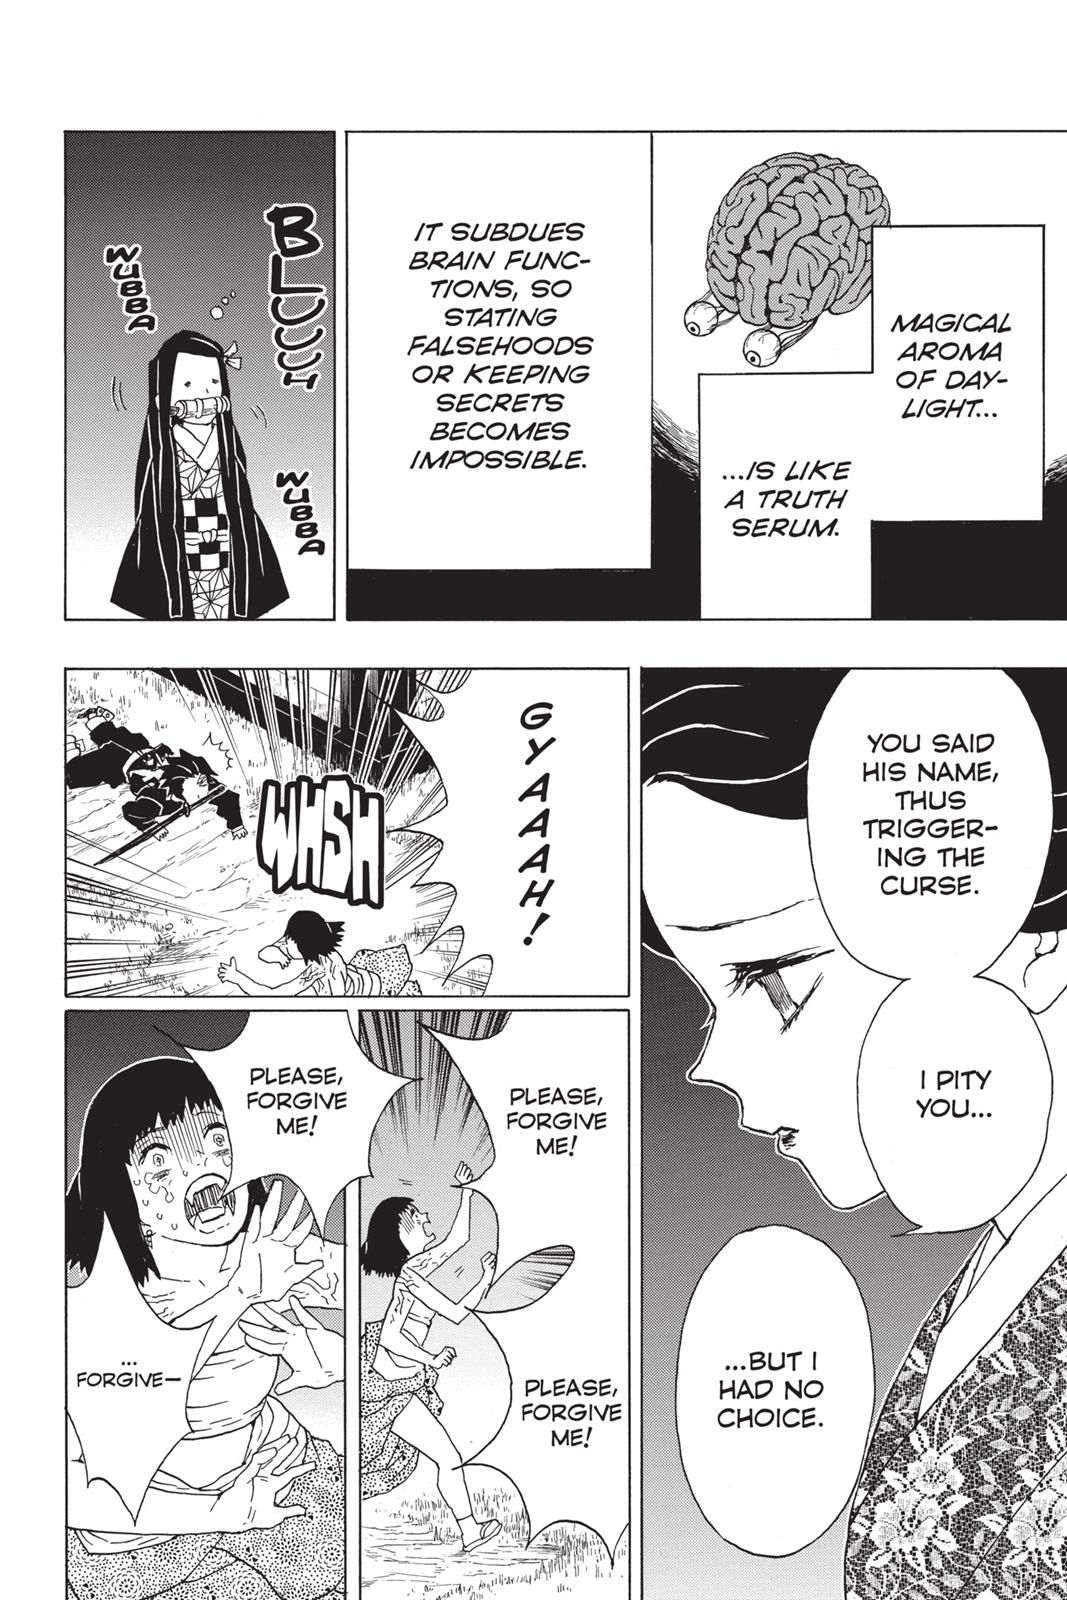 Demon Slayer Manga Manga Chapter - 18 - image 11